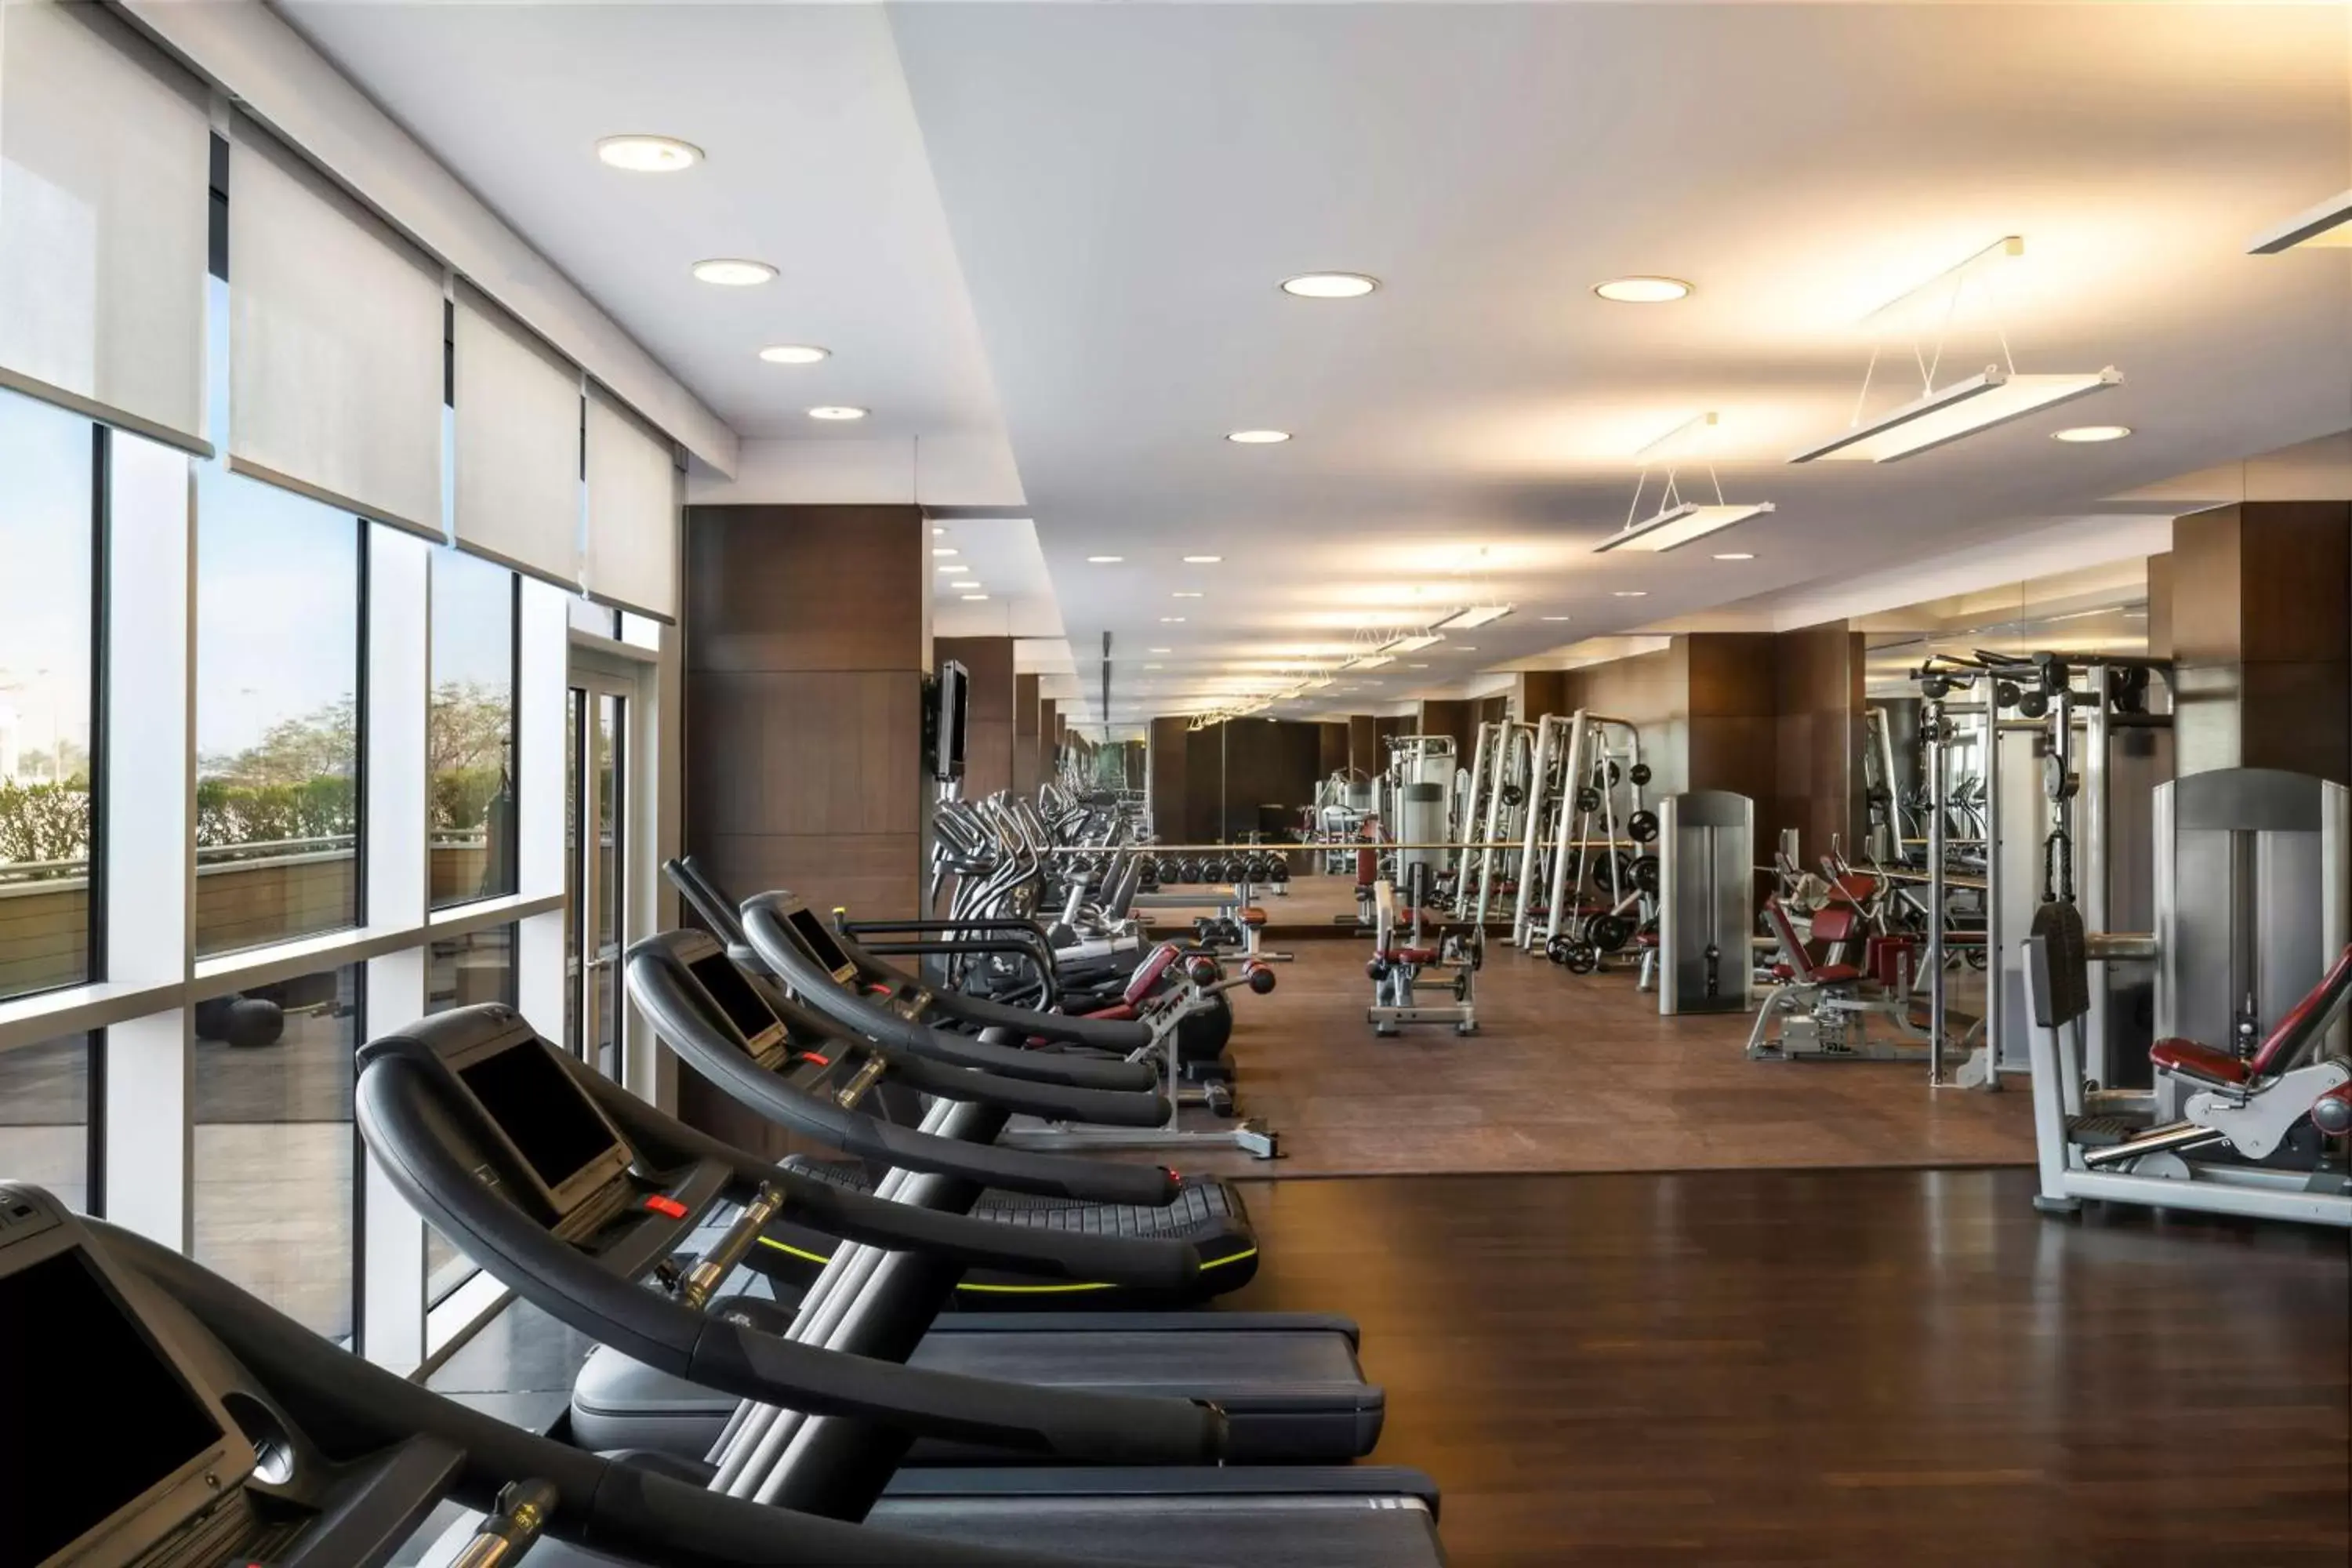 Fitness centre/facilities, Fitness Center/Facilities in Hyatt Regency Oryx Doha